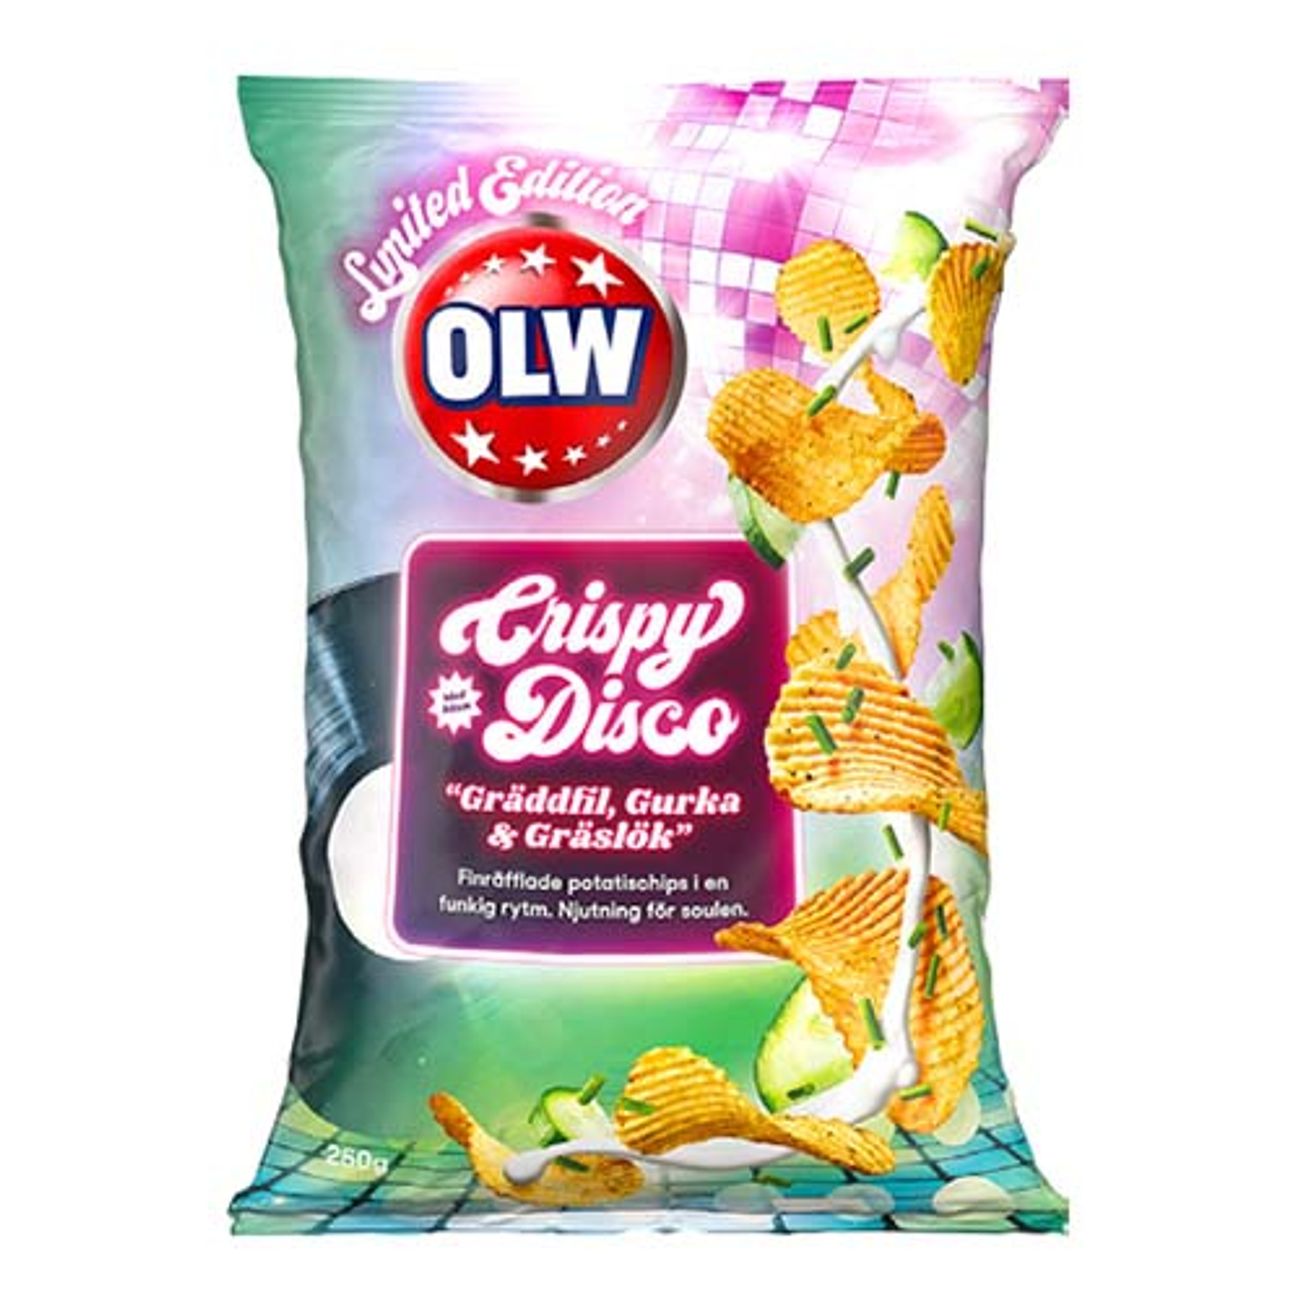 olw-crispy-disco-limited-edition-1